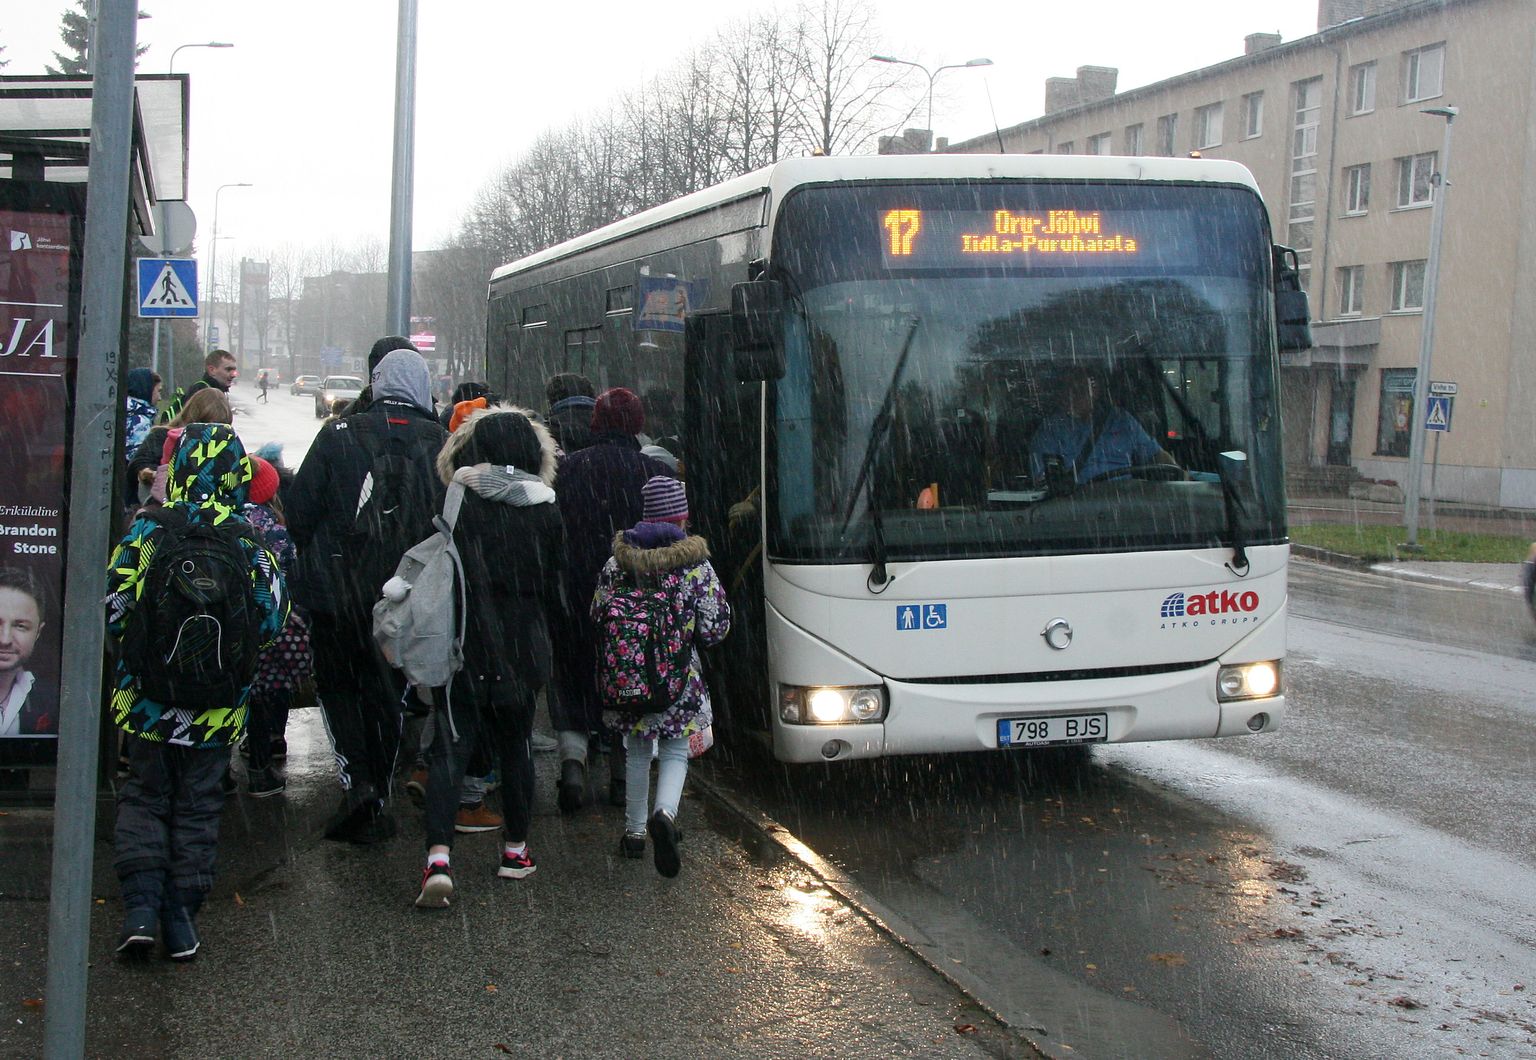 Автобусы "ATKO Liinid" курсируют по кохтла-ярвеским улицам почти восемь лет, но в конце лета срок договора с перевозчиком заканчивается.